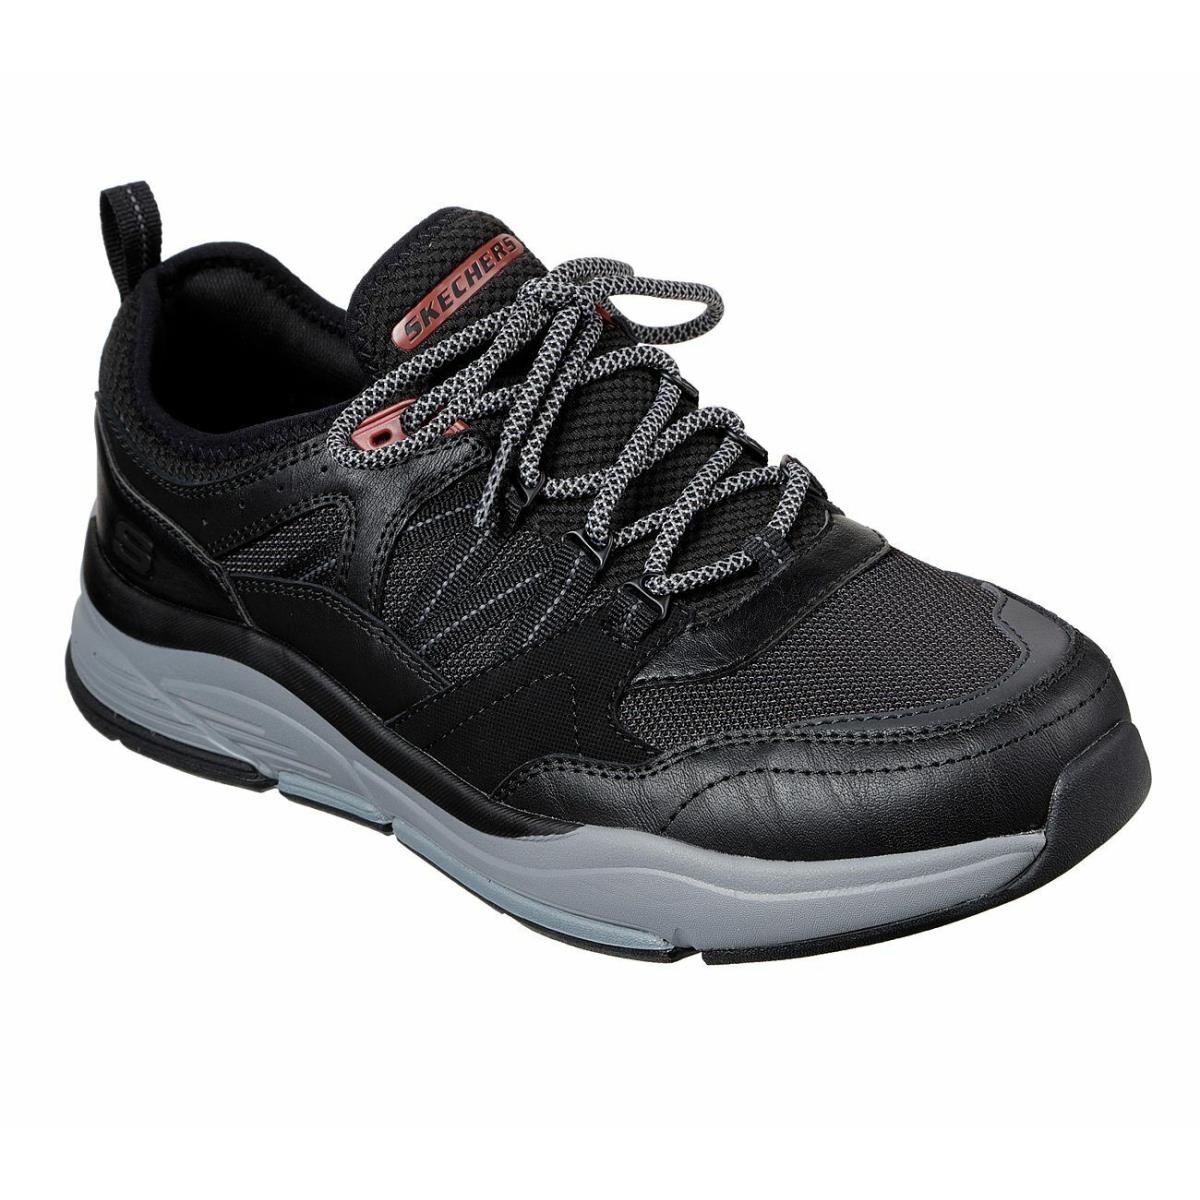 Men`s Skechers RX Fit Benago Flinton Casual Shoes 210022 /blk Multi Sizes Black